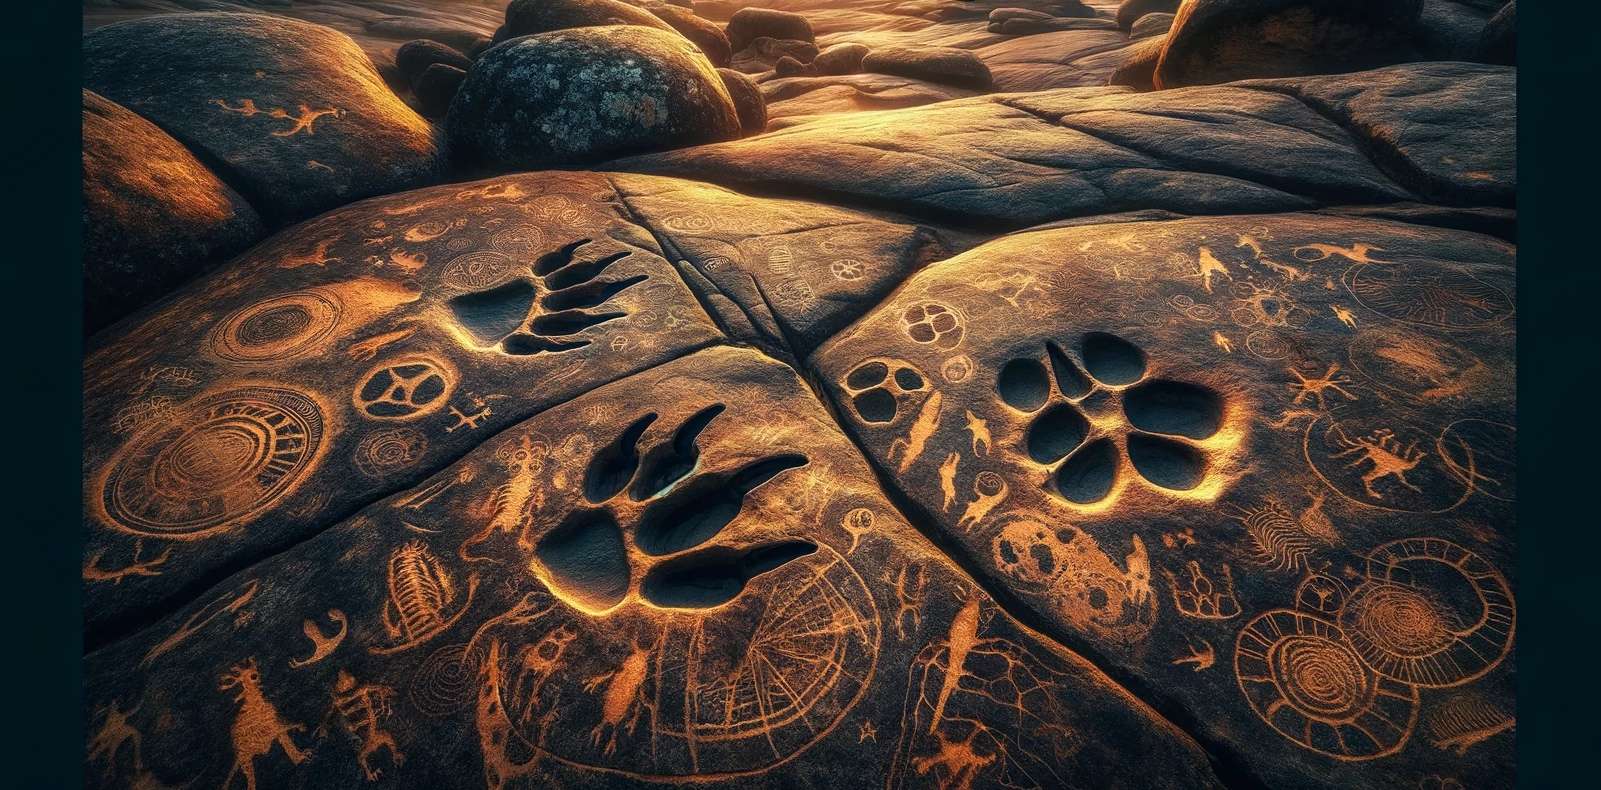 Découverte unique au monde de gravures préhistoriques avec des empreintes de dinosaures !